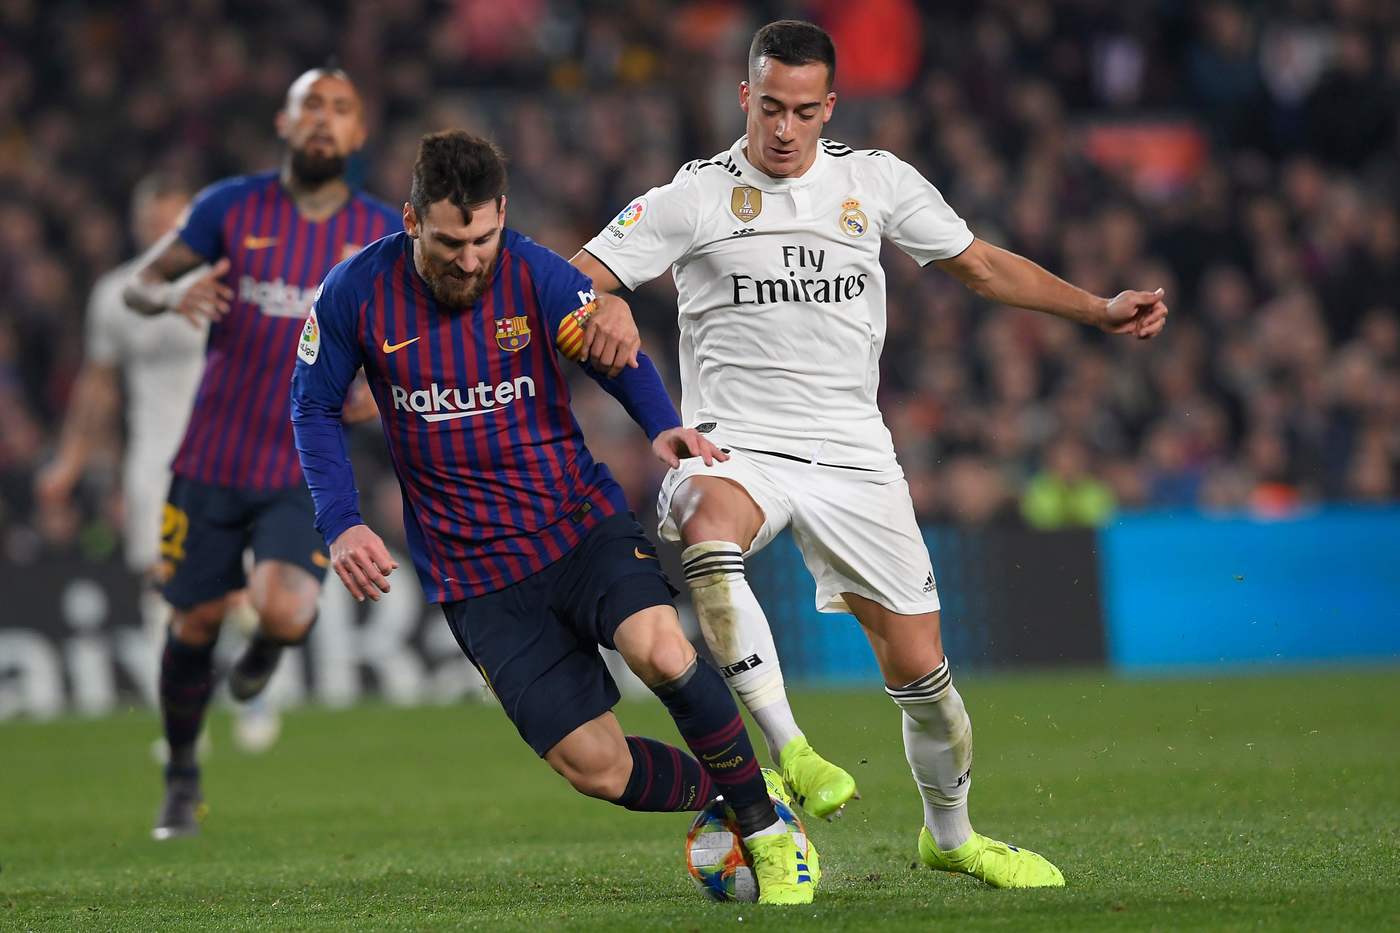 LaLiga, Real Madrid-Barcellona sabato 2 marzo: analisi e pronostico della 26ma giornata del campionato spagnolo